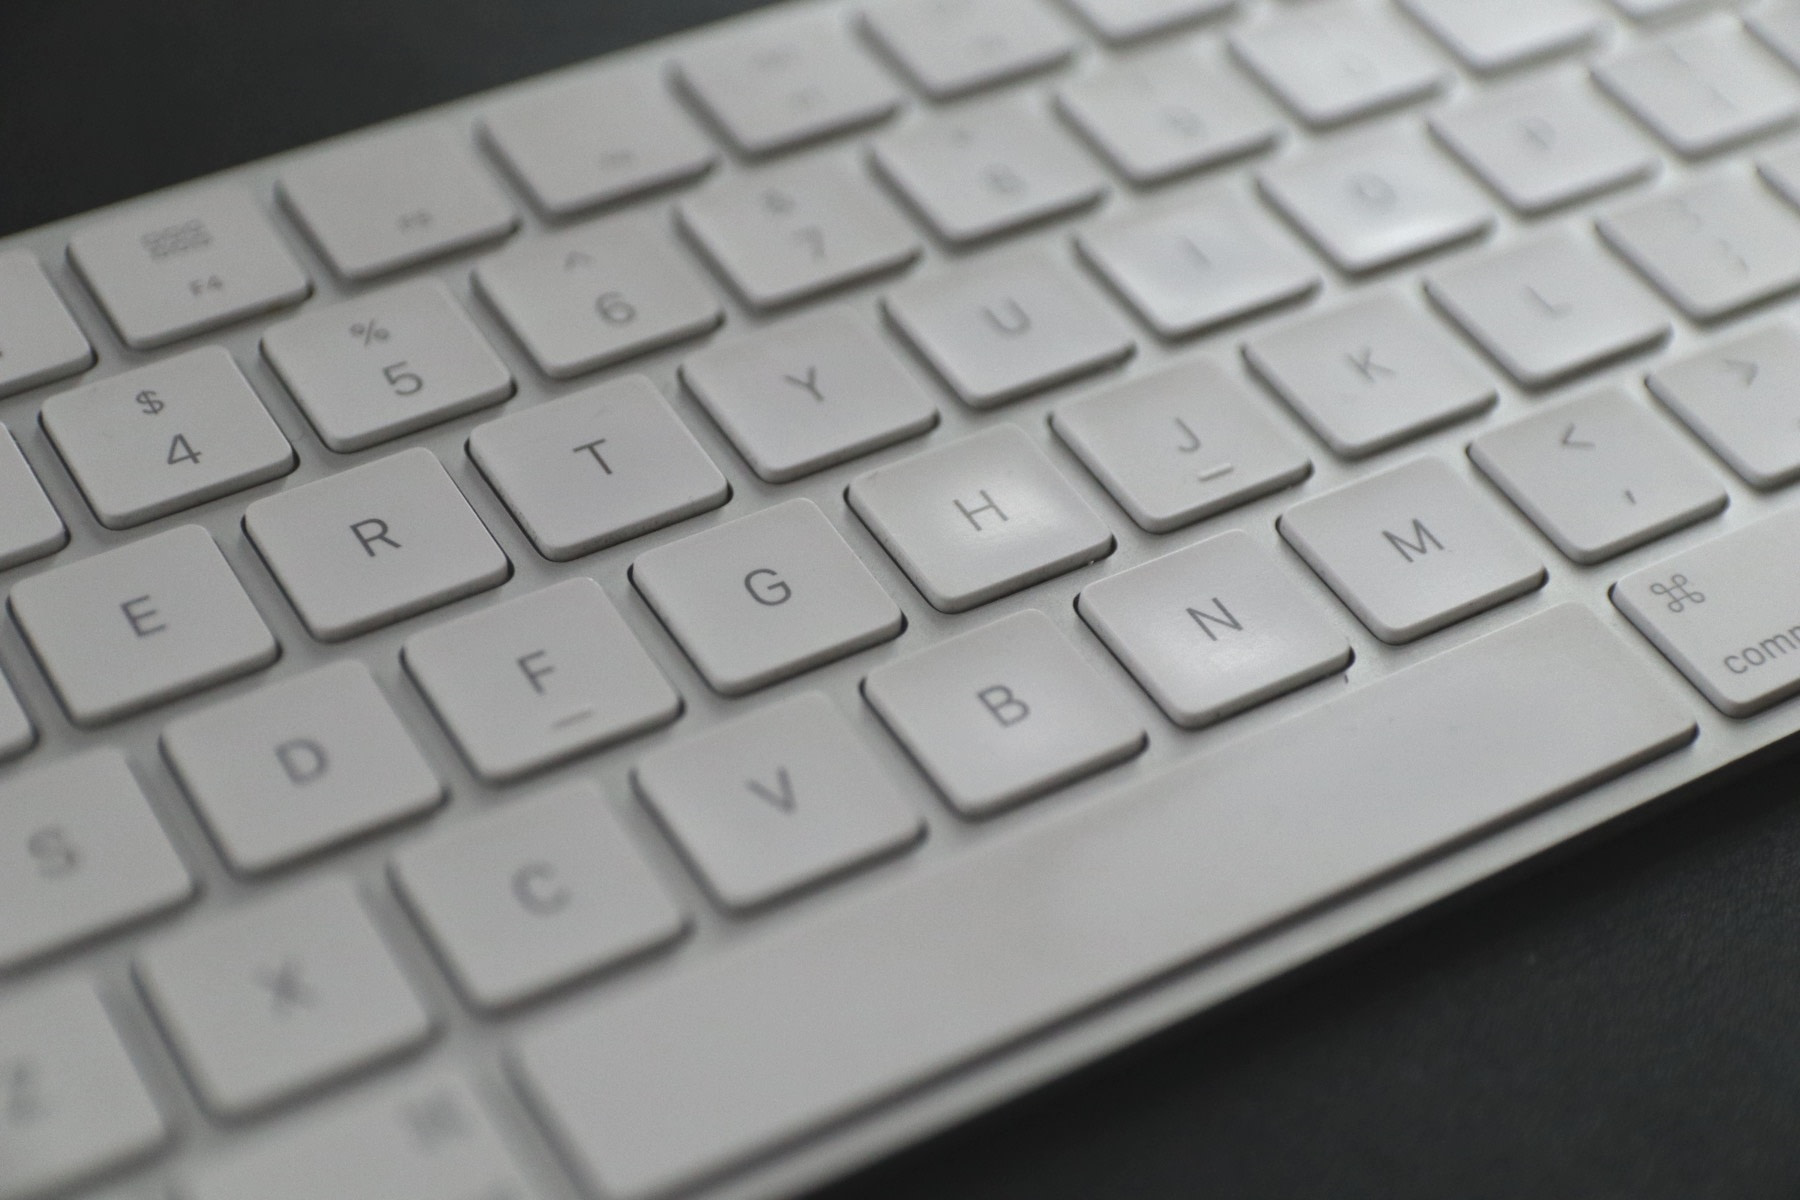 brandsmart wireless mac compatible keyboard